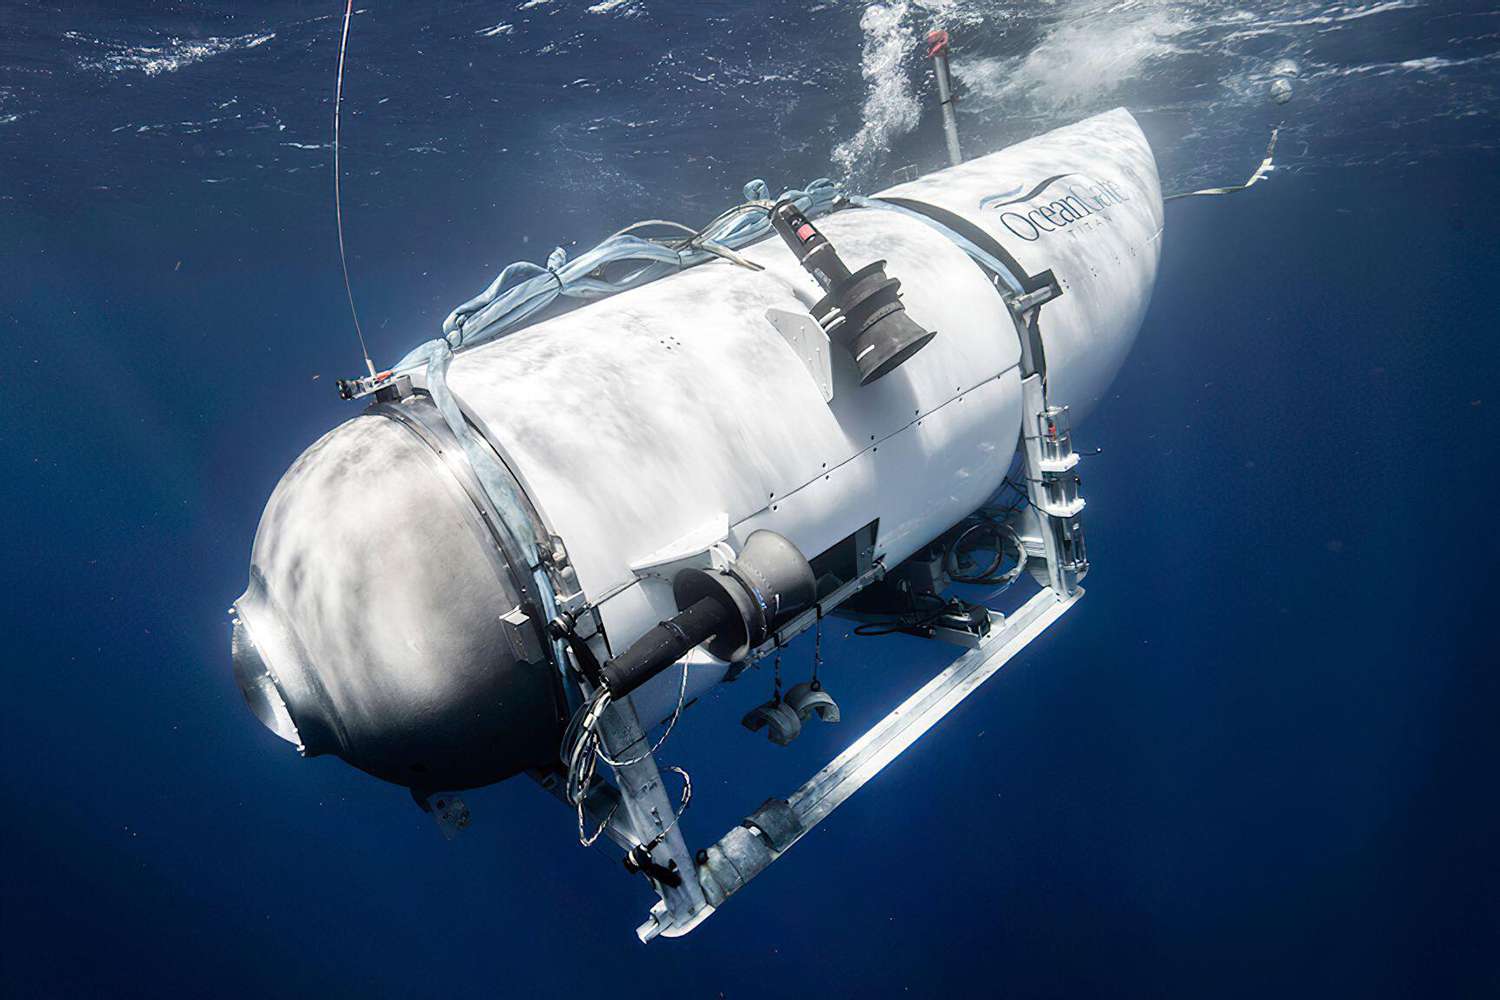 oceangate submersible titan 062023 3 b5ad9a0a57304210aec4dd91f831d4bf